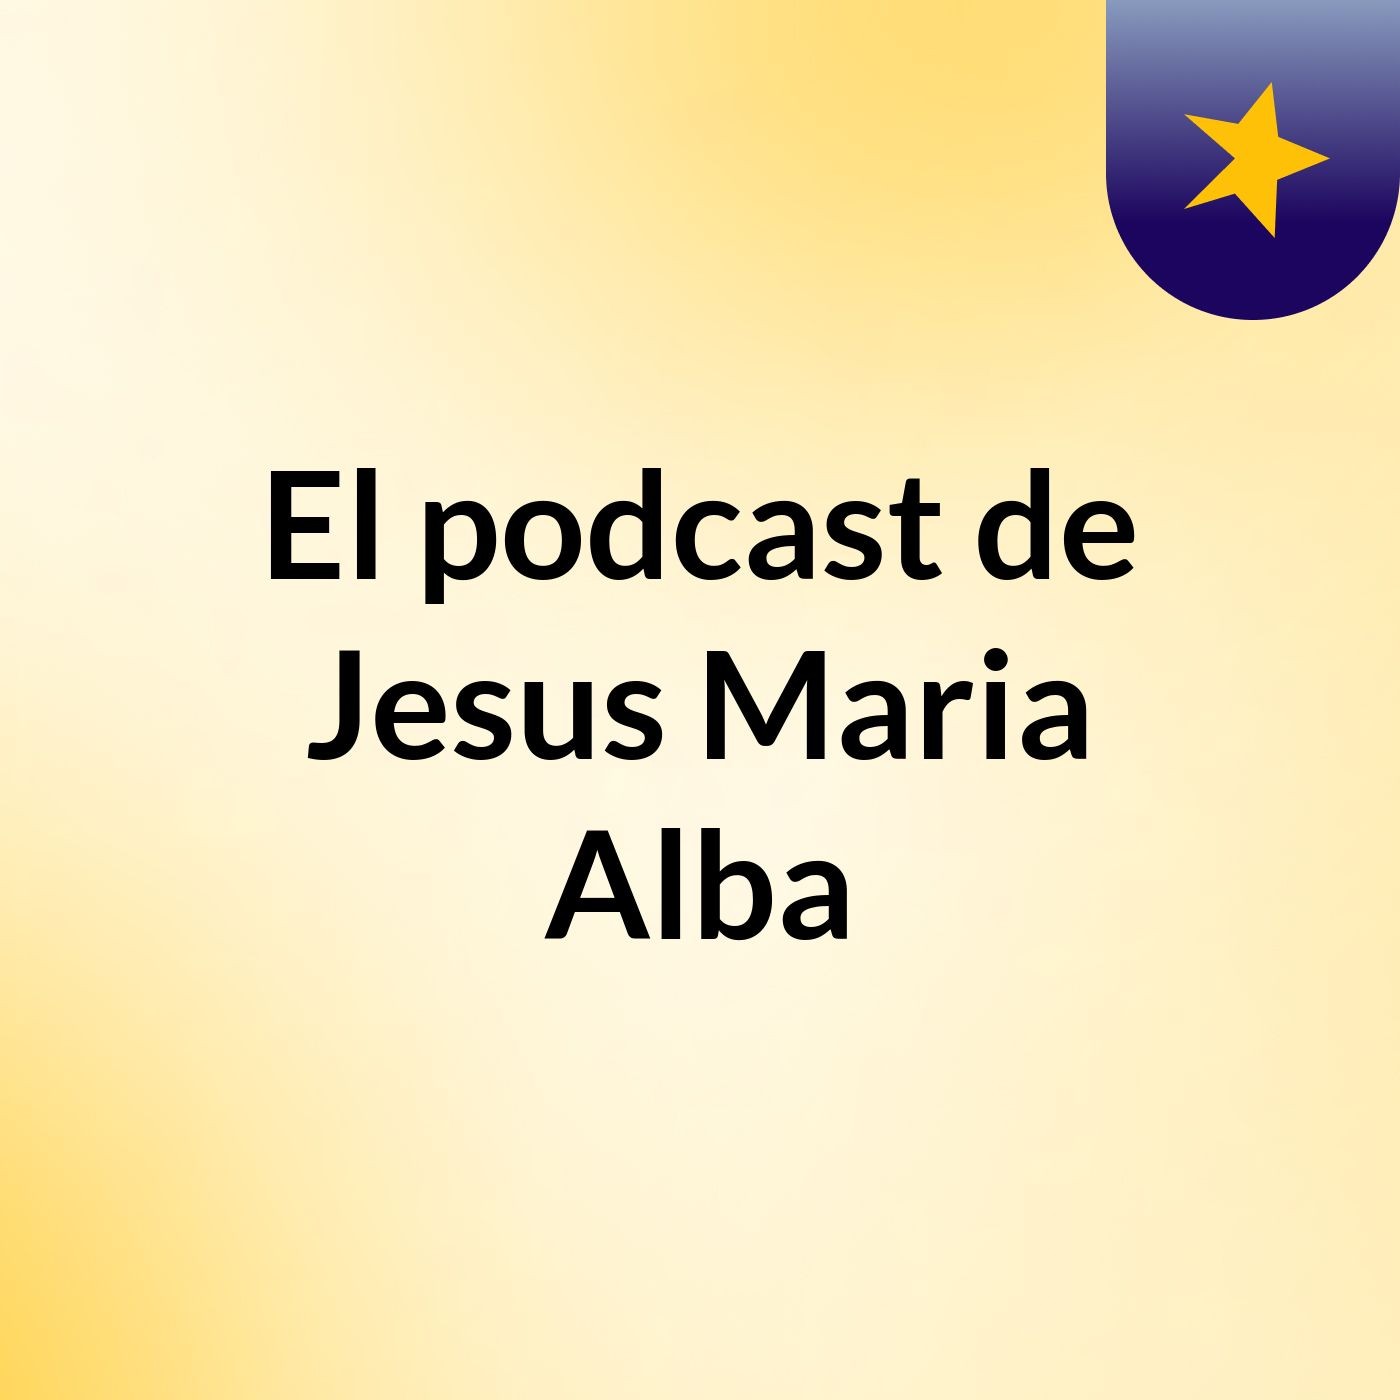 Episodio 3 - El podcast de Jesus Maria Alba